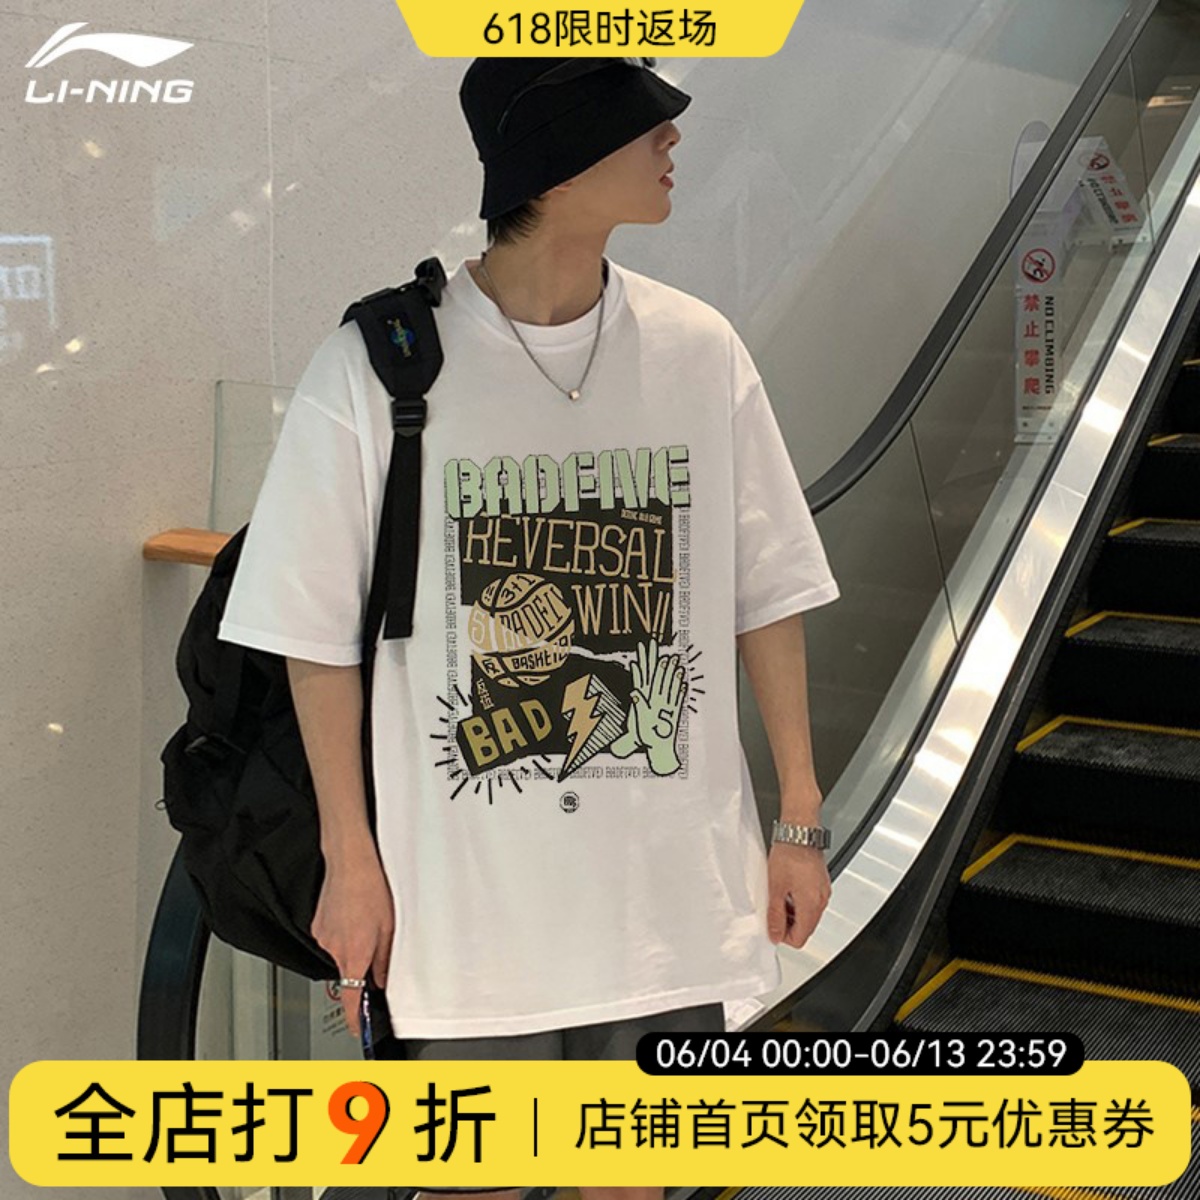 李寧男t恤春夏季新款反伍BADFIVE籃球運動寬松短袖國潮情侶文化衫